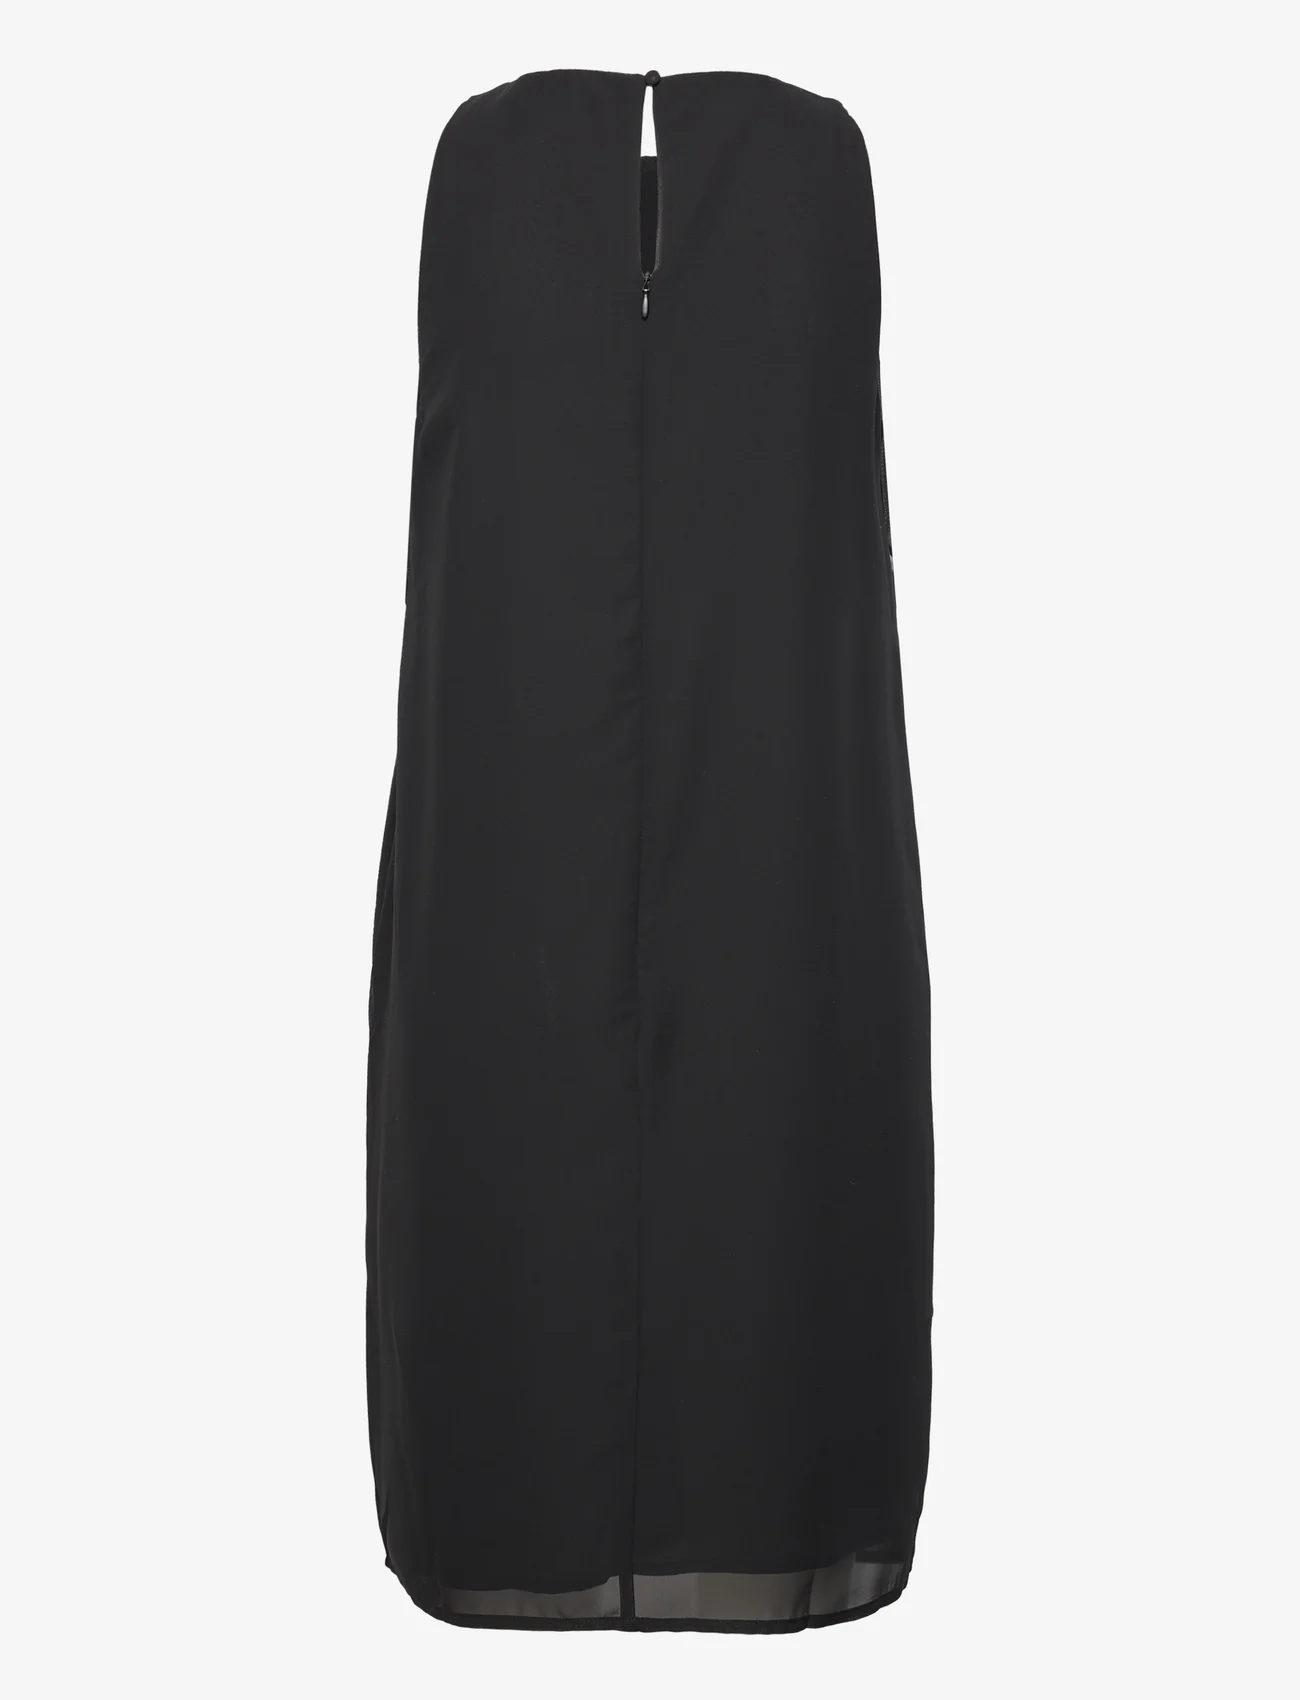 Esprit Casual - Dresses light woven - party dresses - black - 1